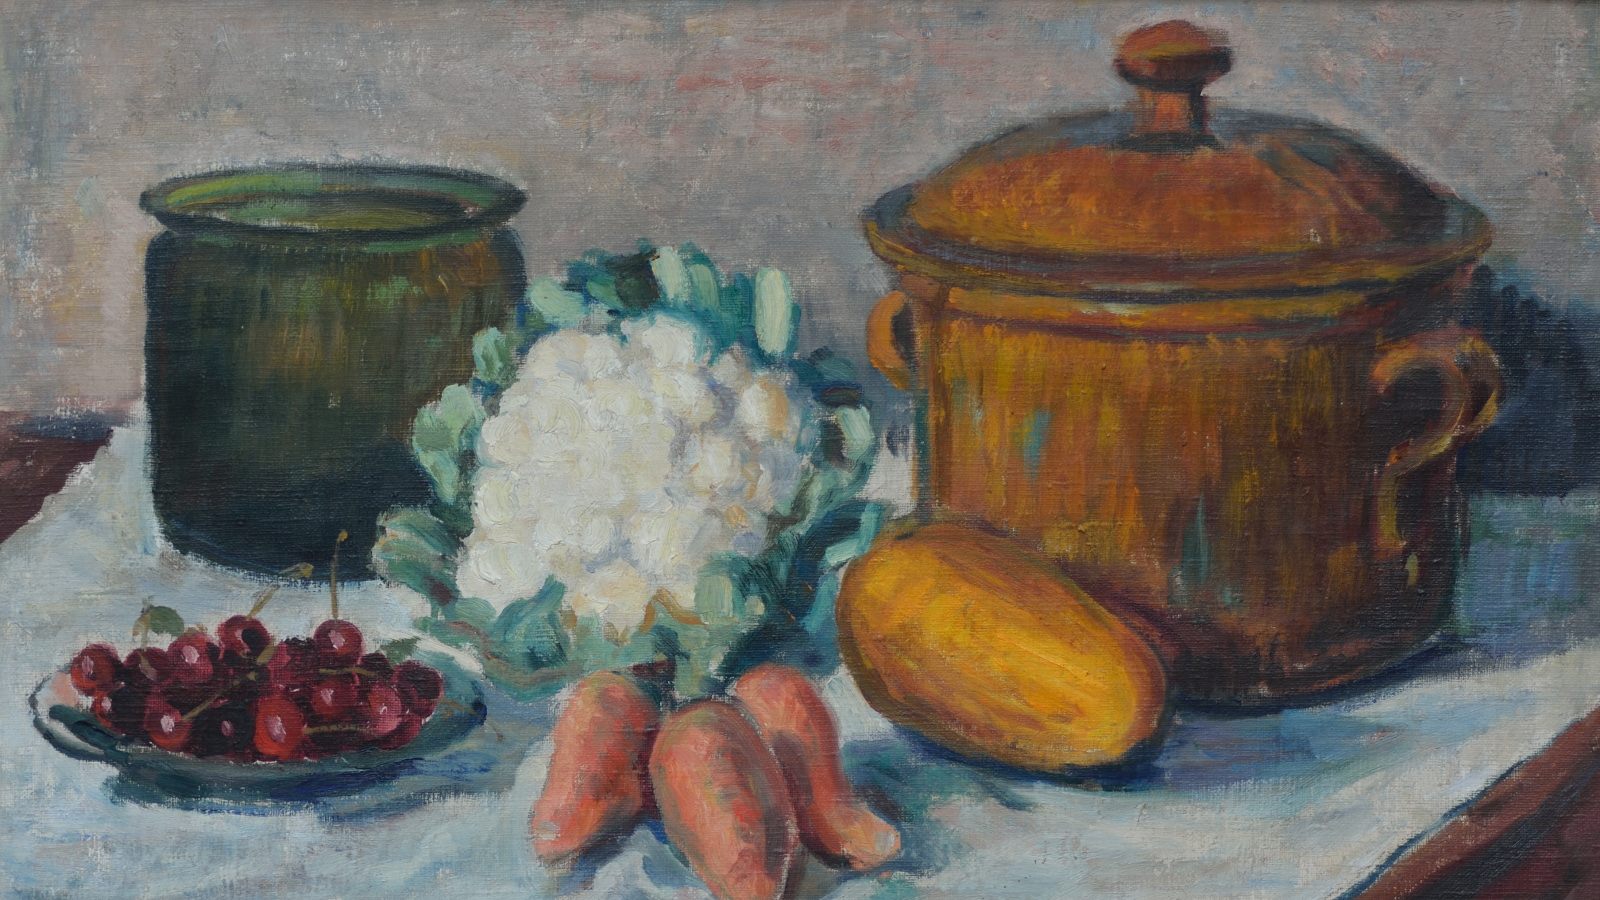 Kuvassa on pöydällä oleva asetelma, jossa on vasemmalla ruskea lasipurkki, valkoinen kukkakaali, porkkanoita ja oikealla iso ruskea pata.